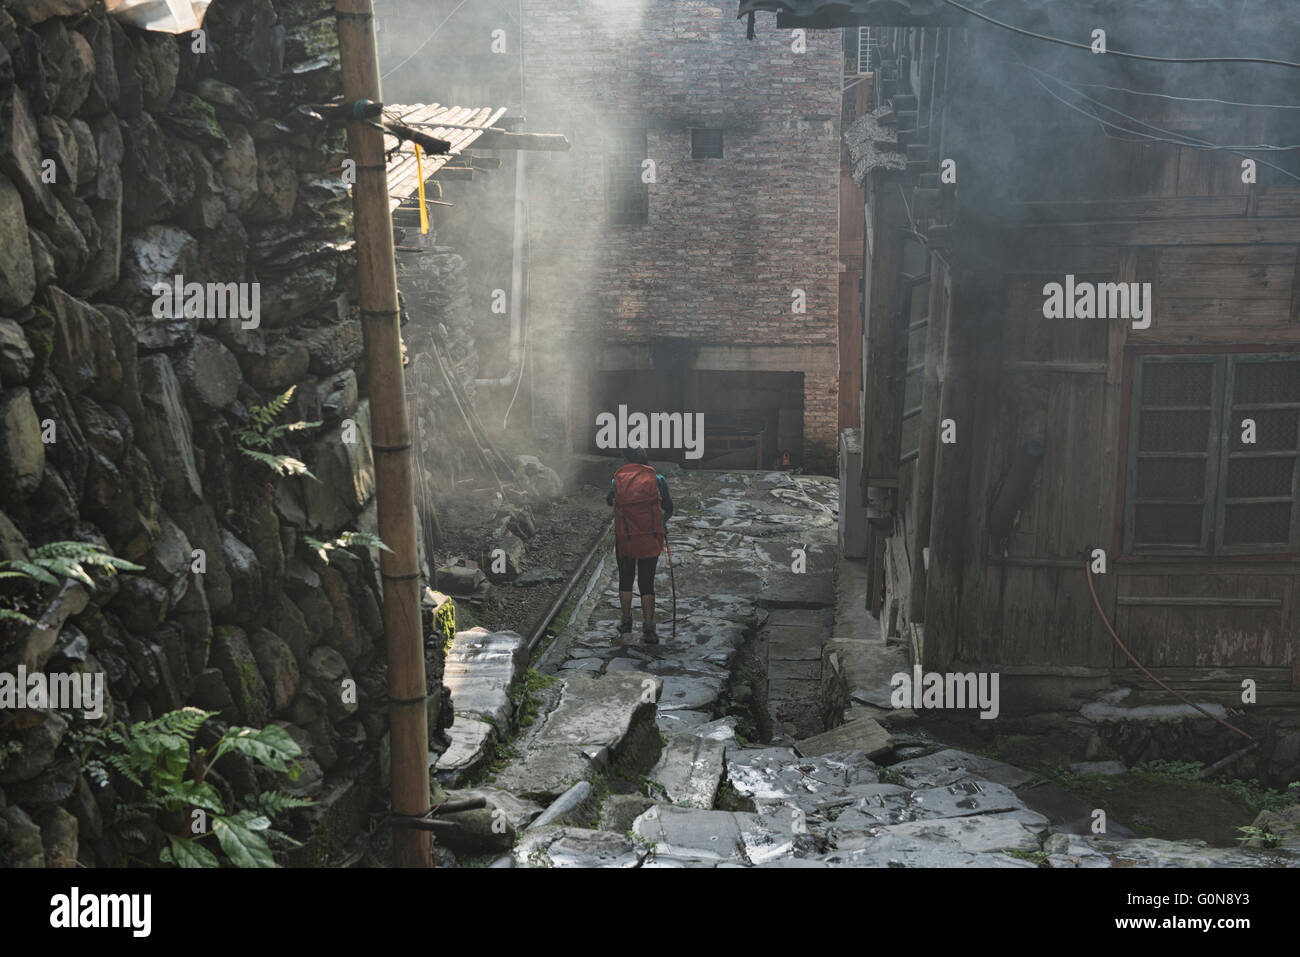 Trekking attraverso la minoranza Yao villaggio di Dazhai, Guangxi Regione autonoma, Cina Foto Stock